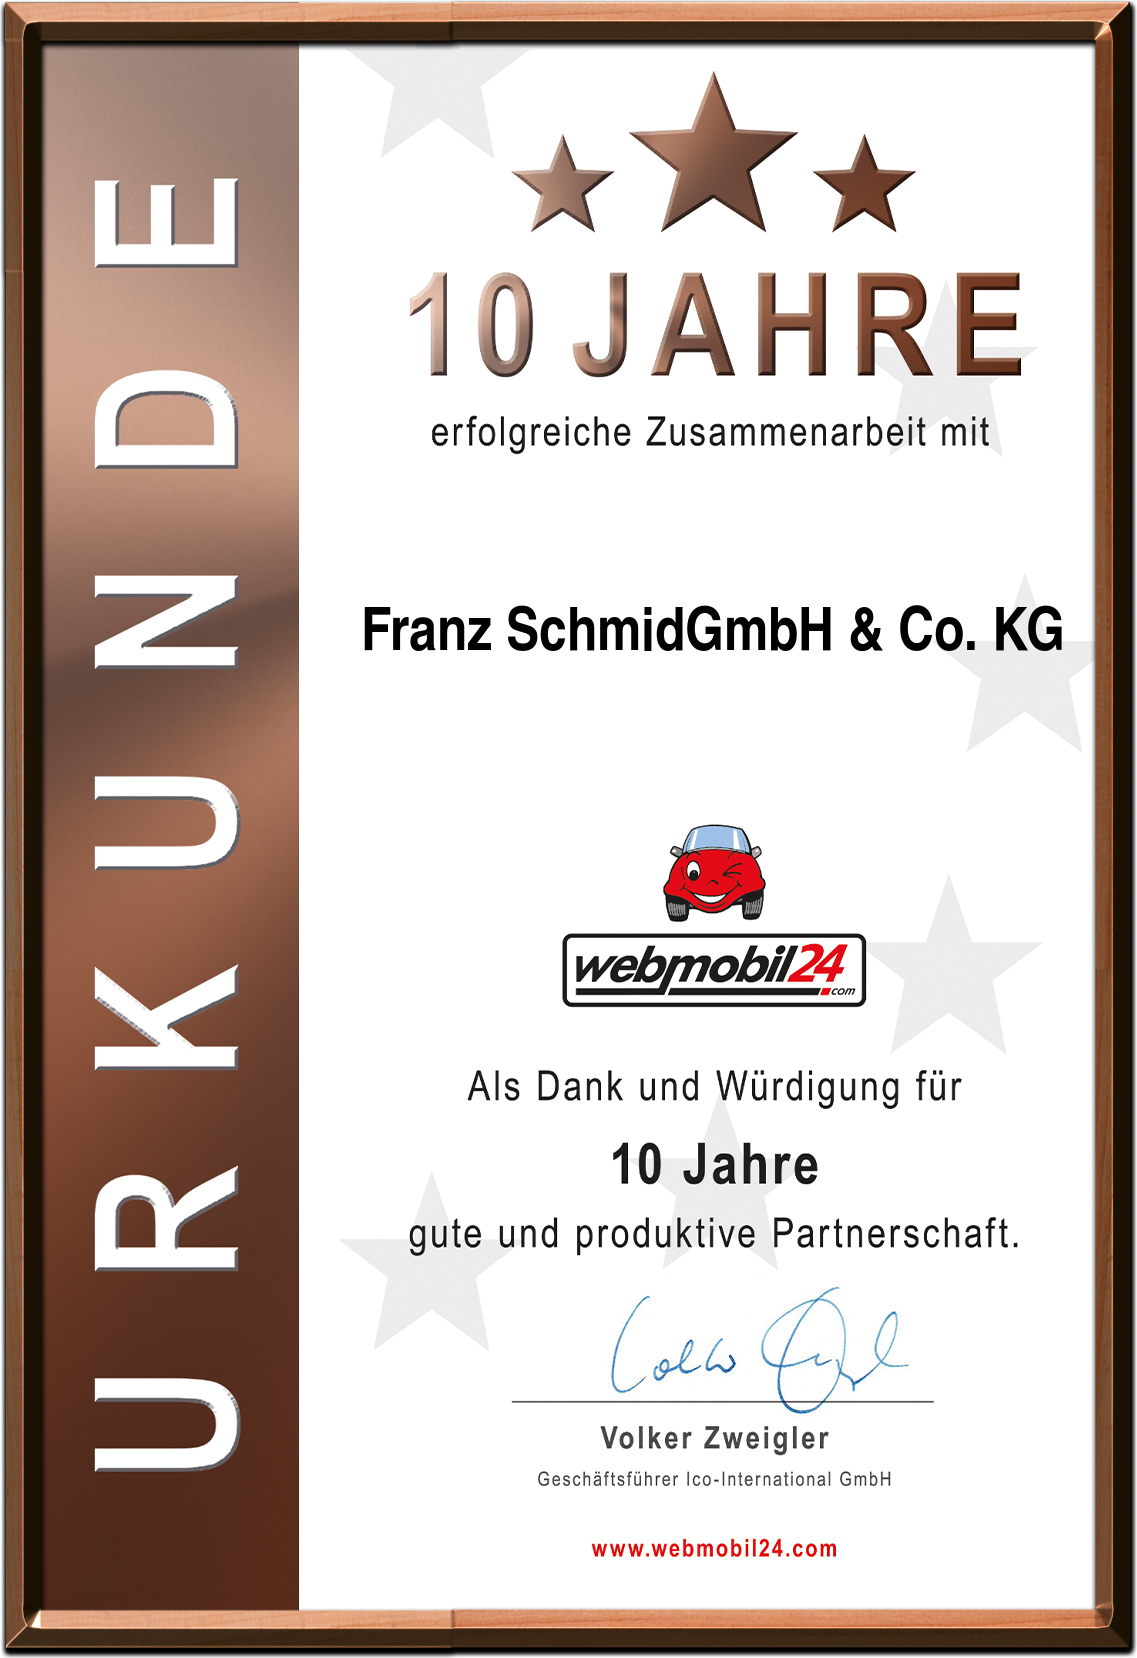 Franz SchmidGmbH & Co. KG